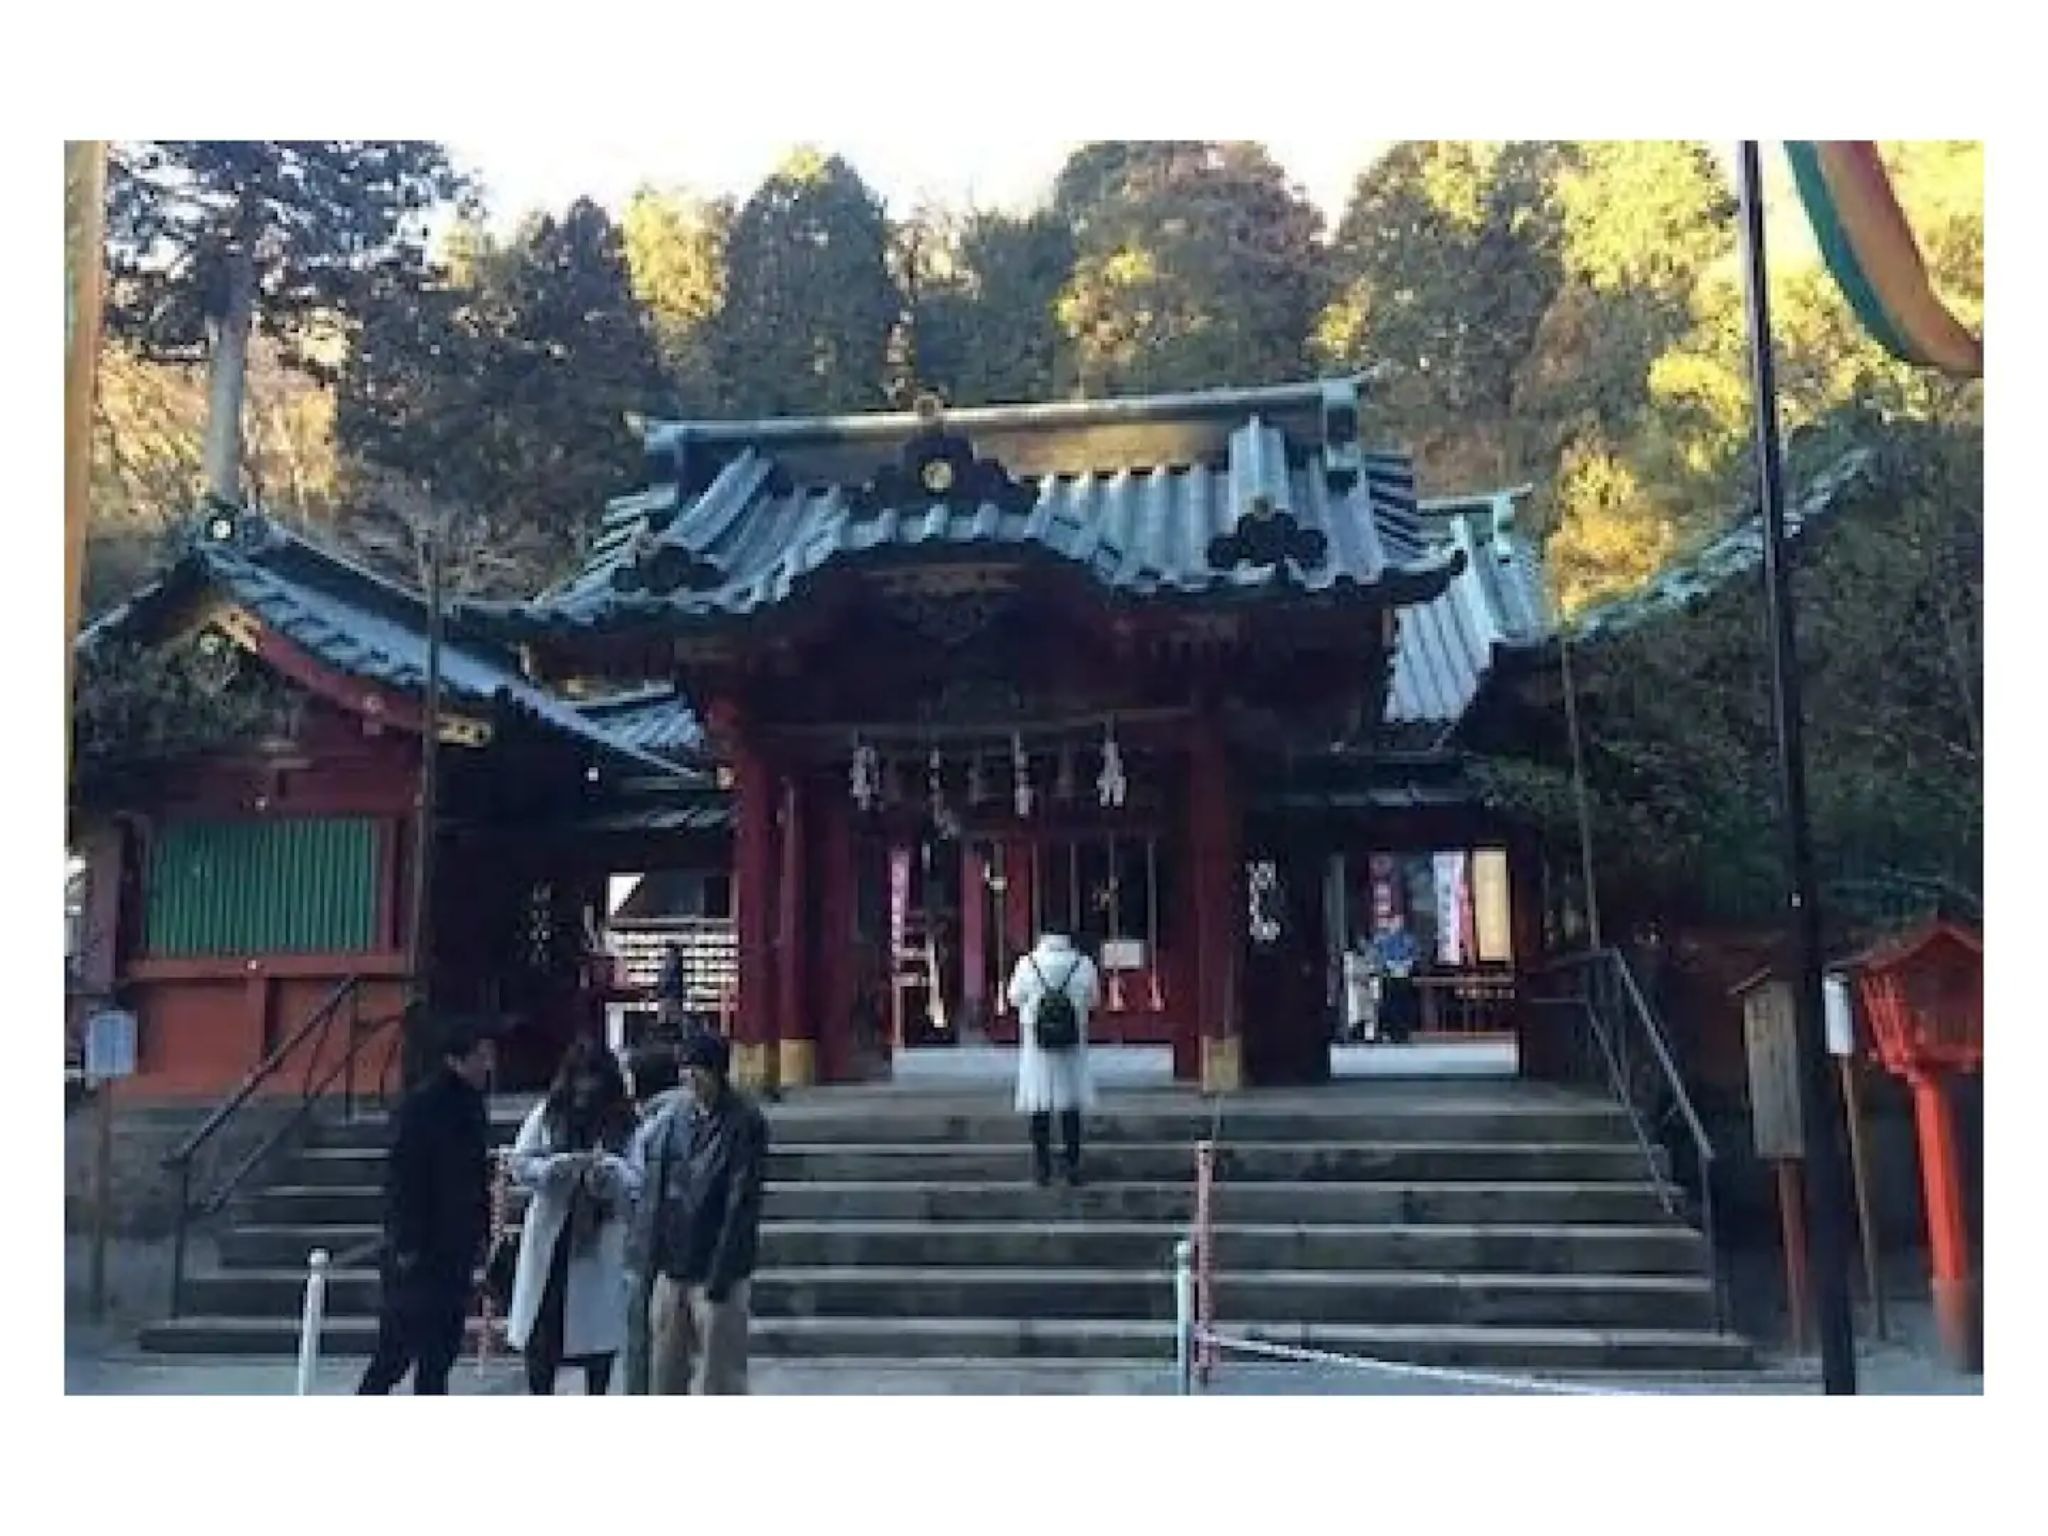 長期滞在テレワーク歓迎!無料wifi完備!箱根の閑静な別荘地!